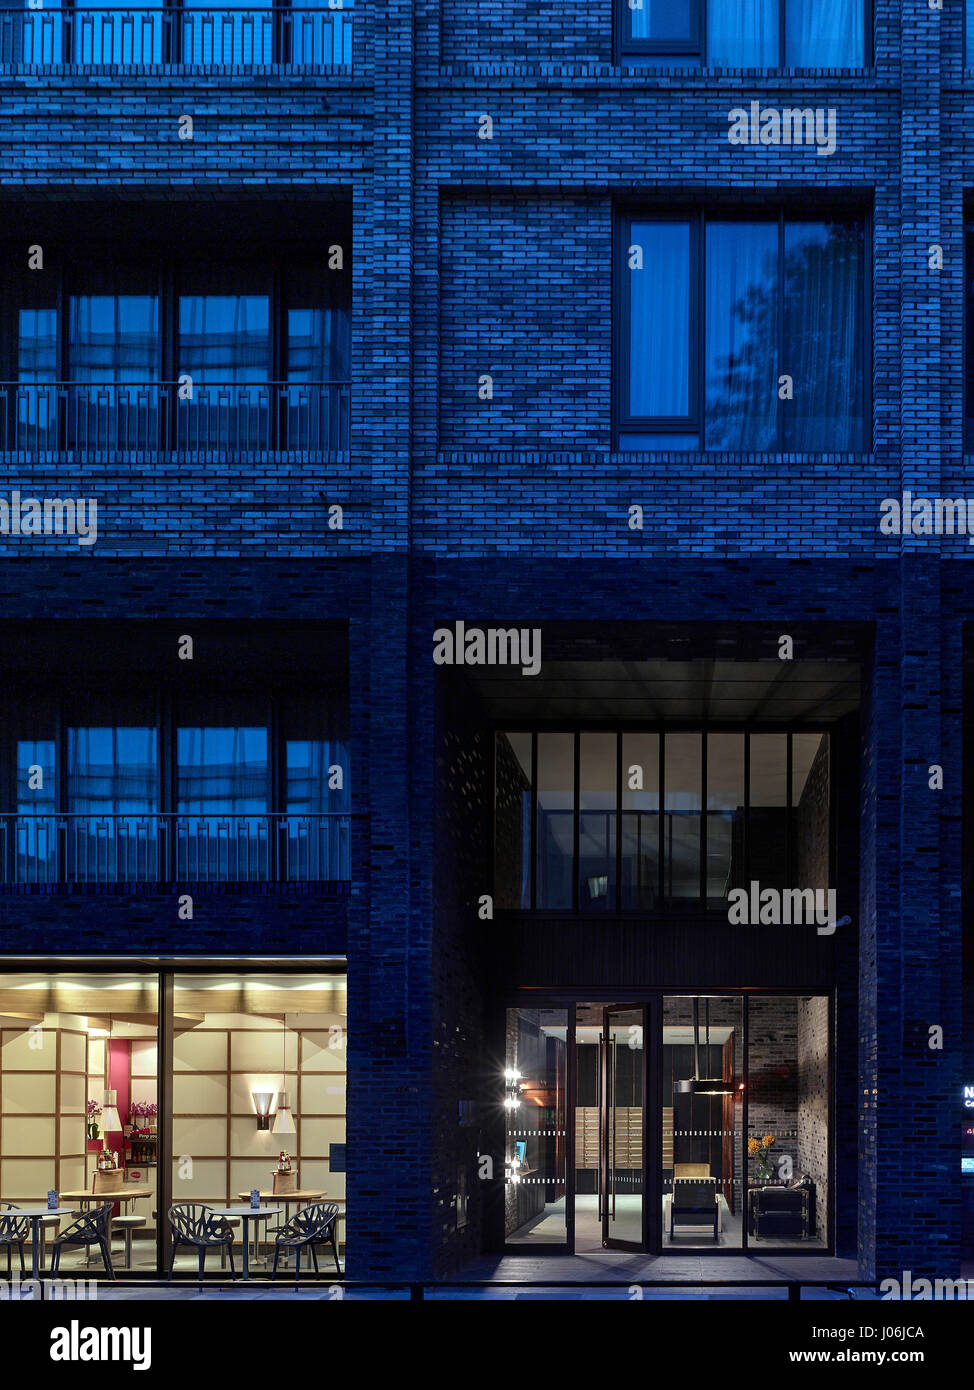 Eingang. 55 Victoria Street, London, Vereinigtes Königreich. Architekt: Steif + Trevillion Architekten, 2016. Stockfoto